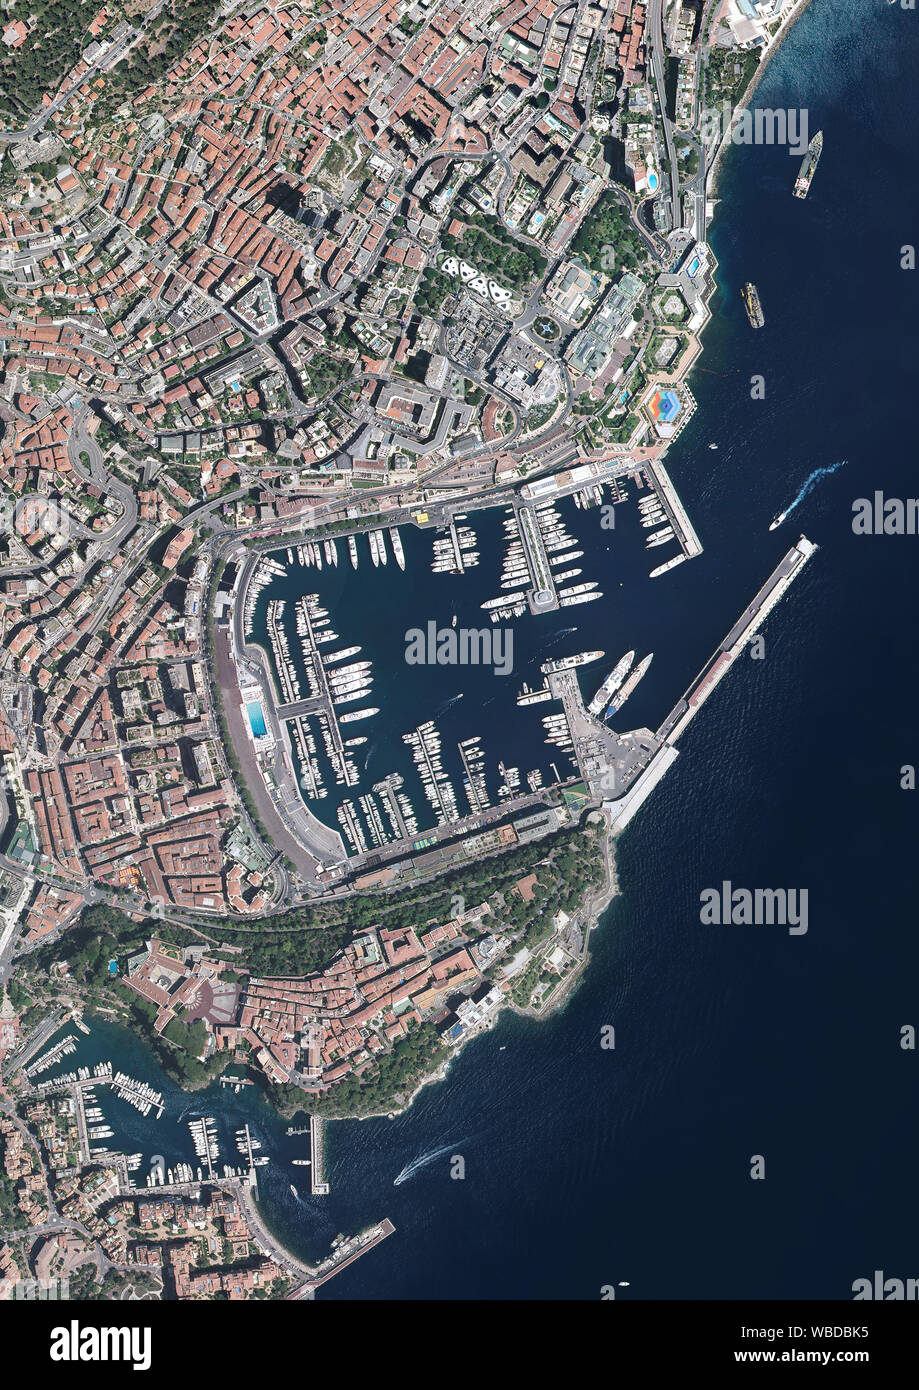 Photographie aérienne de la ville de Monaco et le Port Hercule. Image prise en 2017. Banque D'Images